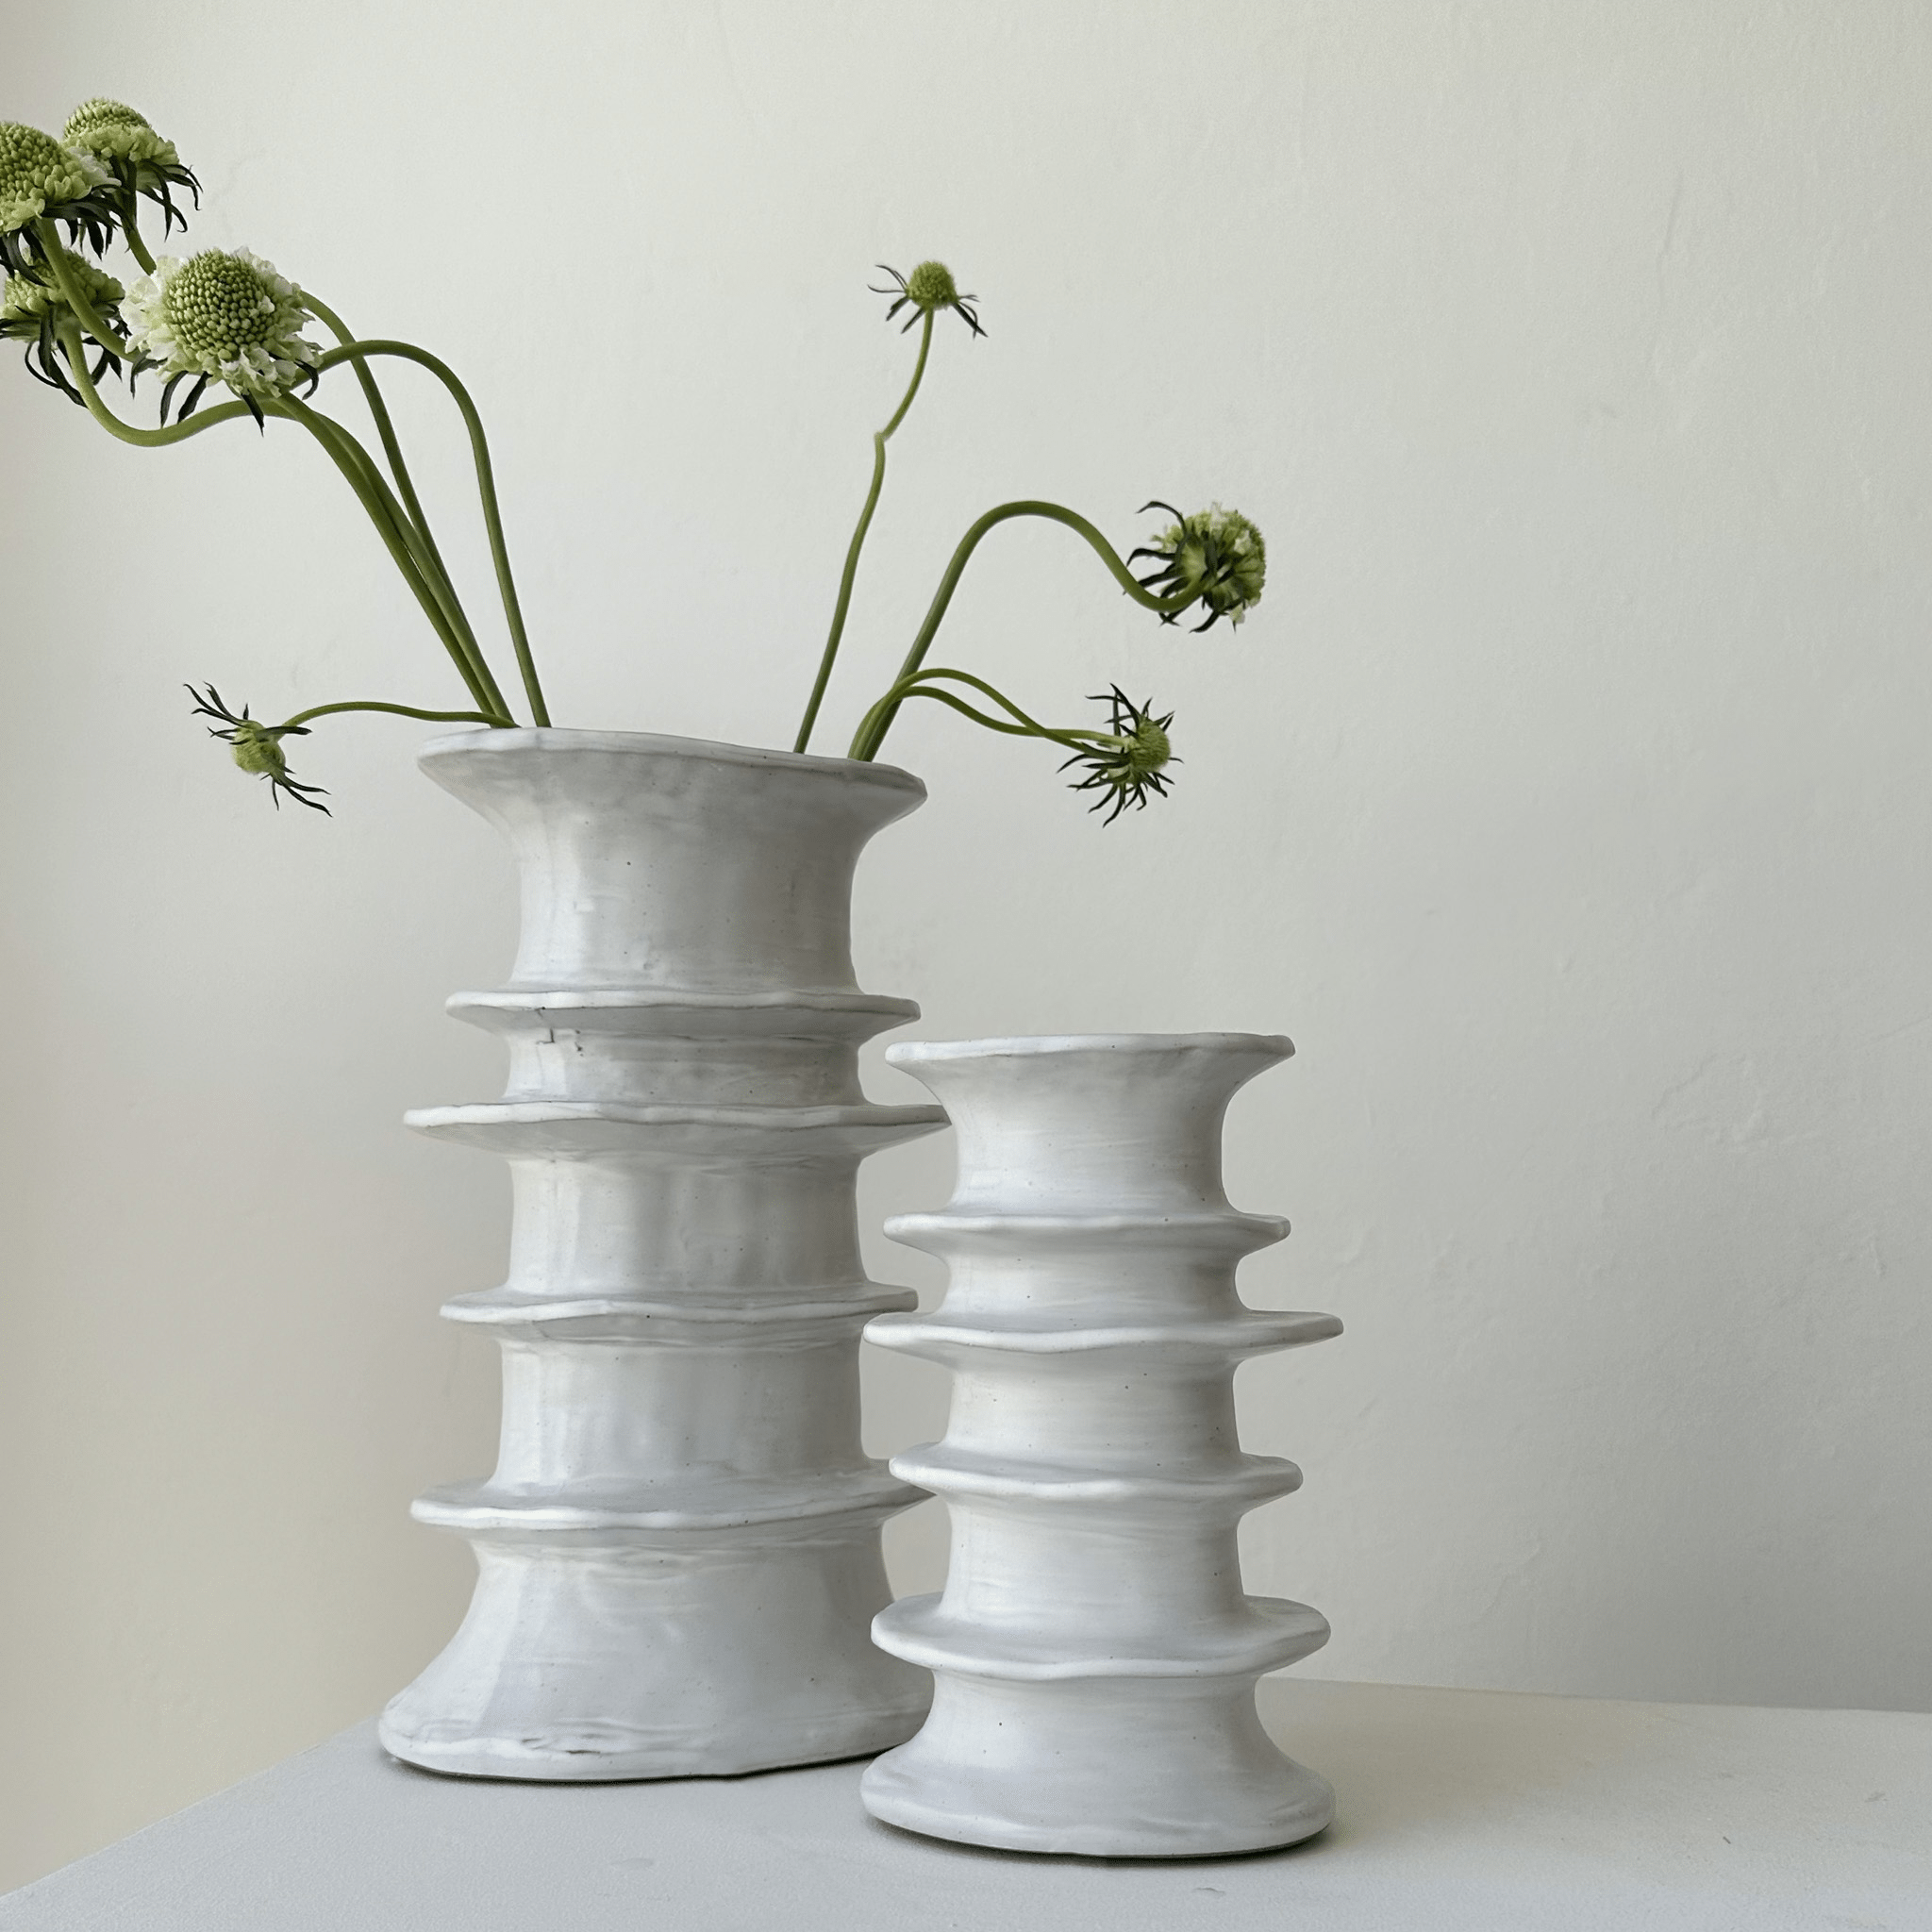 The Billy Vase by Marie Michielssen